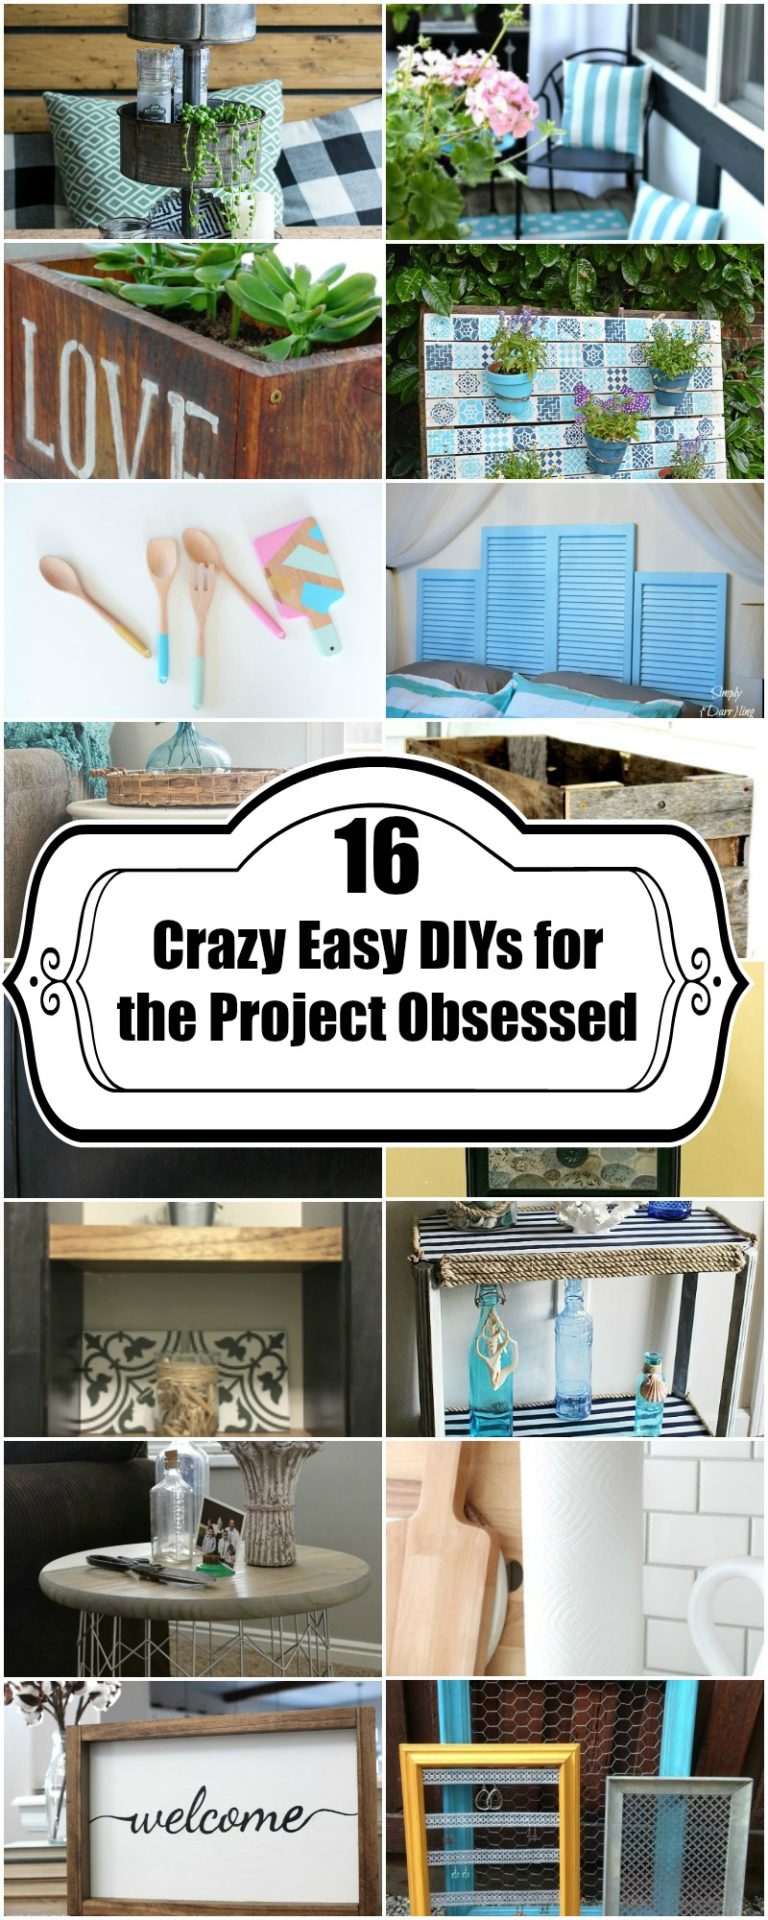 16 Crazy Easy DIYs